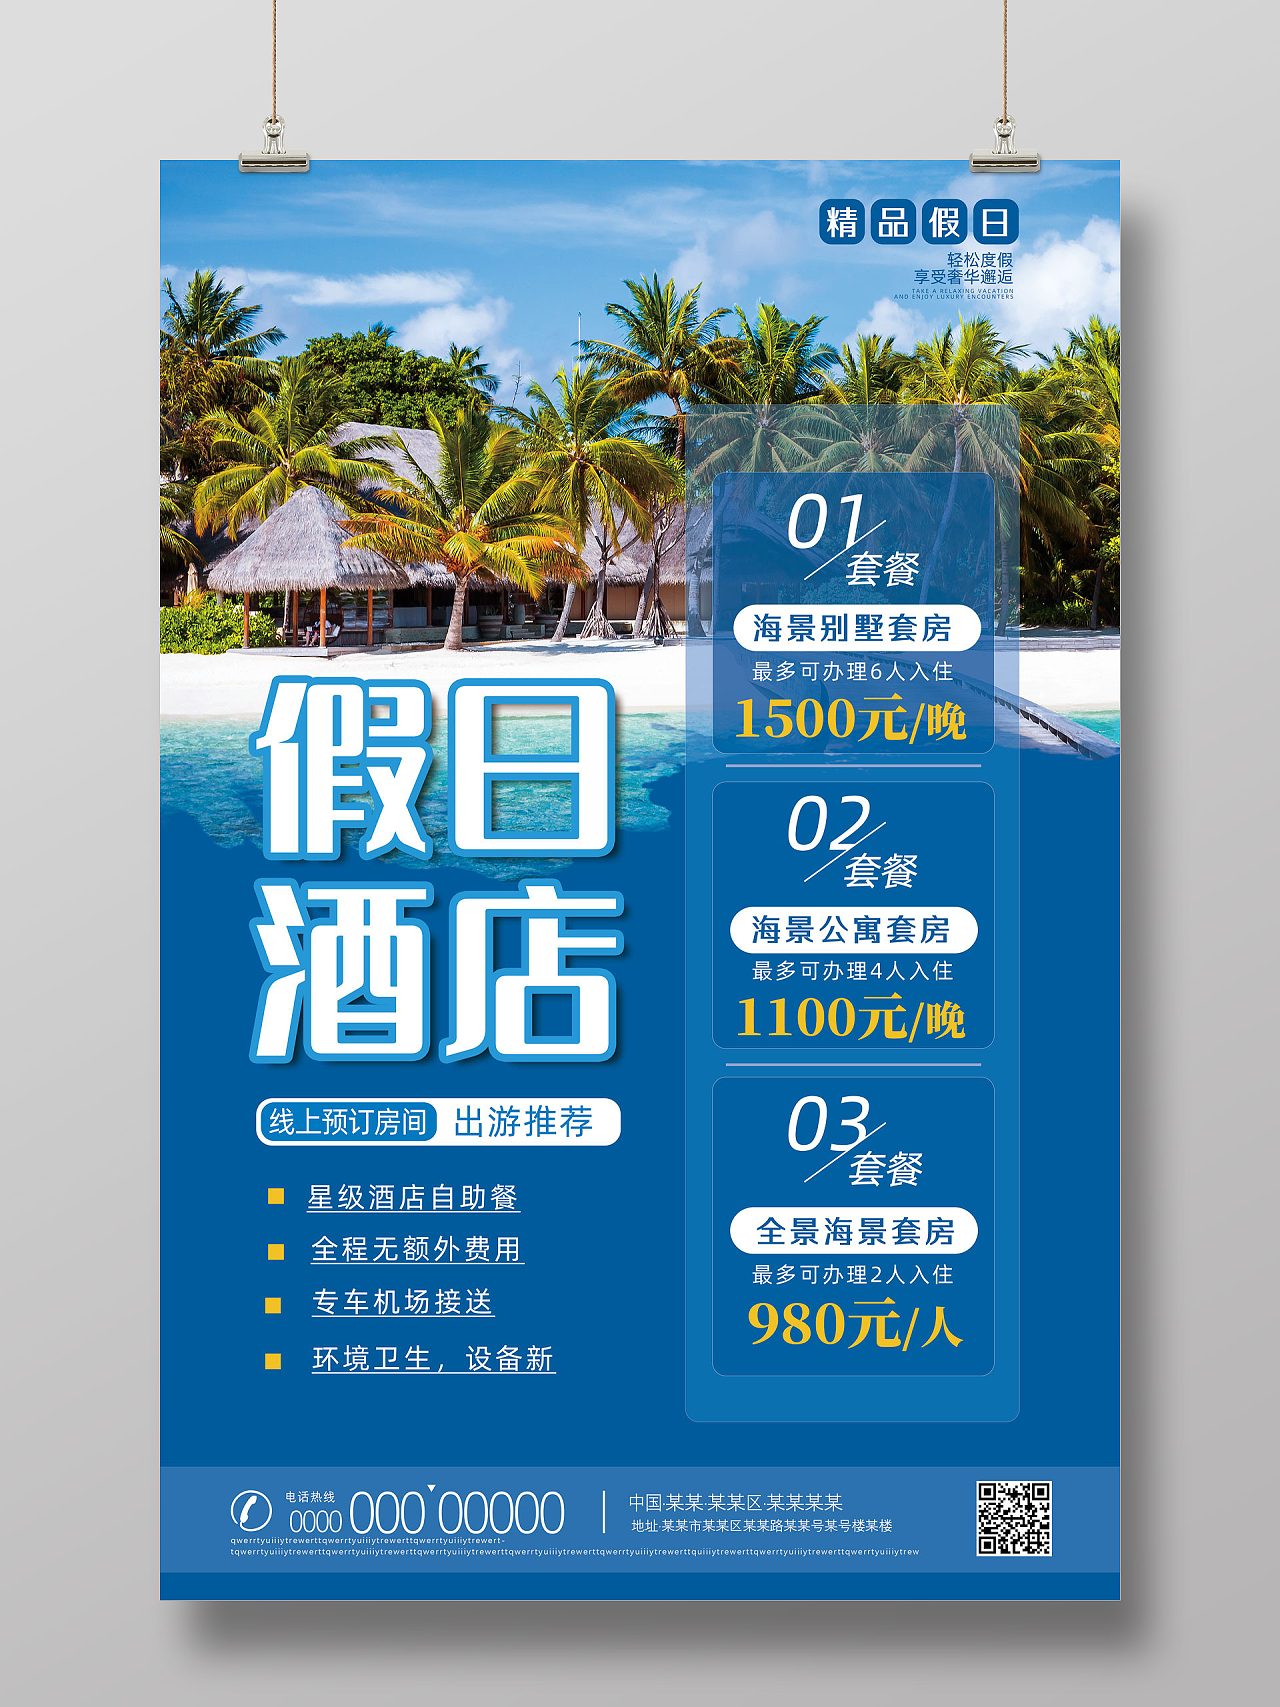 蓝色海滩假日酒店优惠套餐宣传海报酒店海报